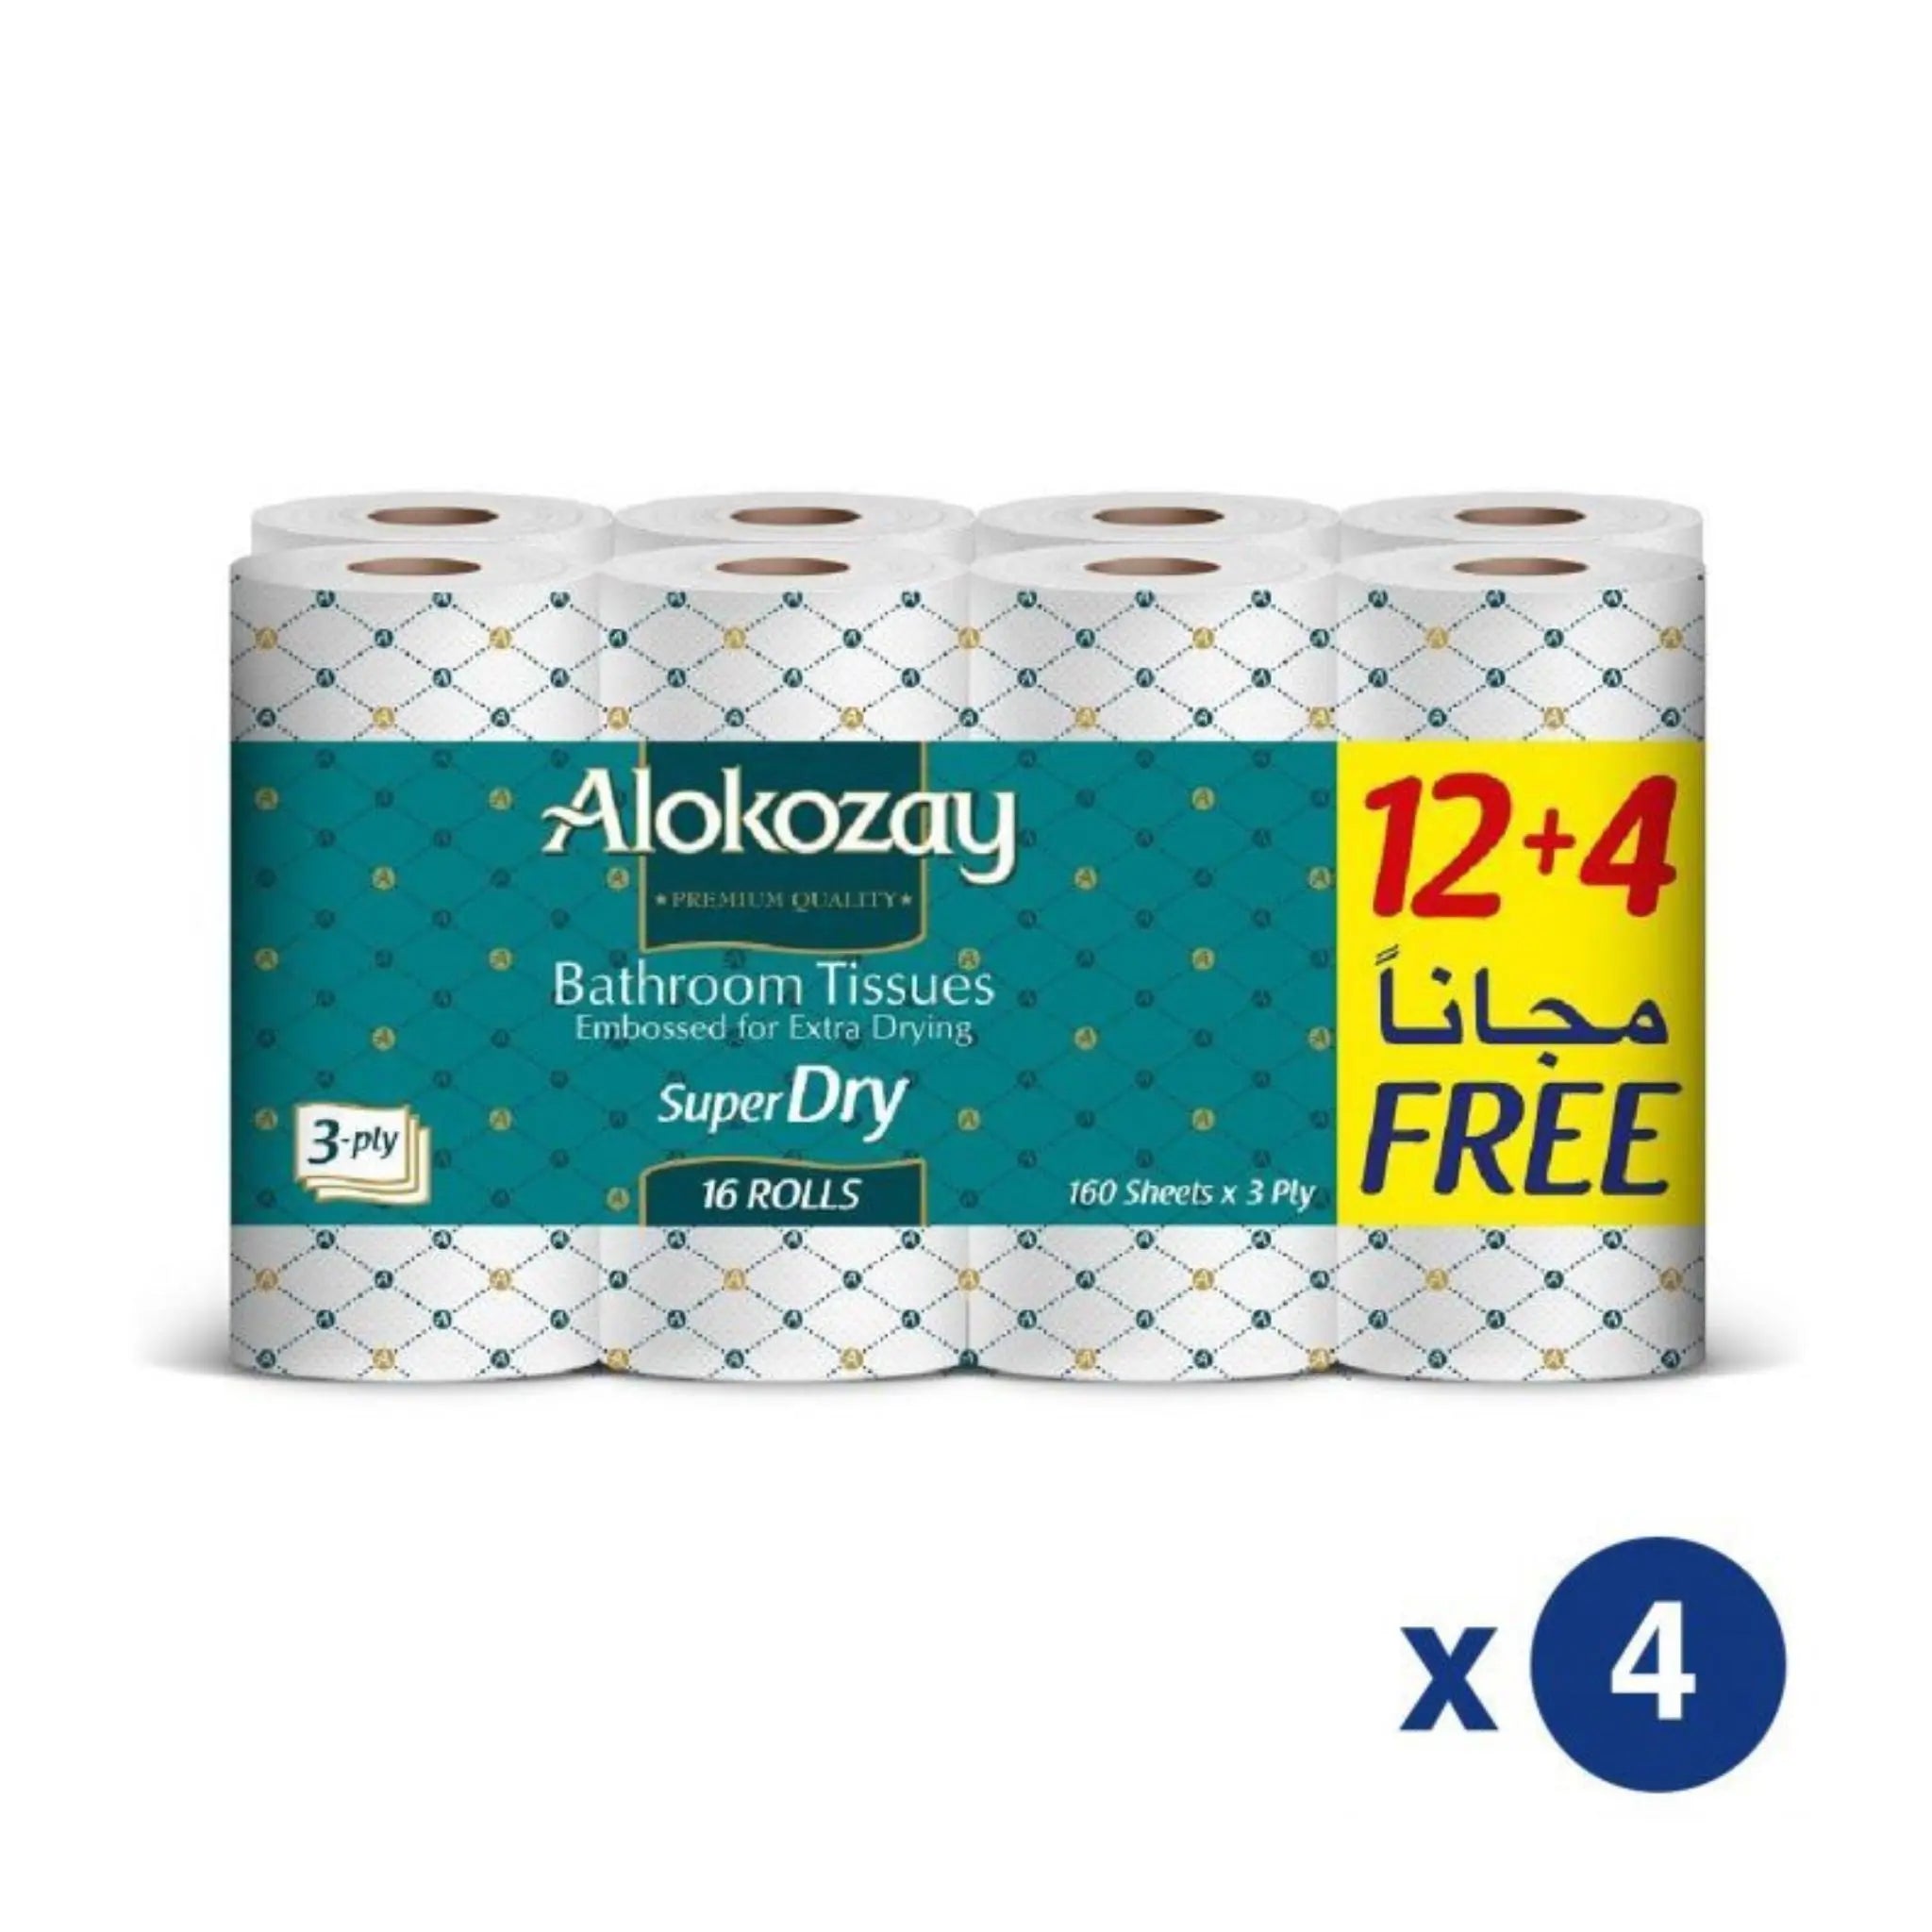 Alokozay Super Dry Bathroom Tissue - (12 + 4 Rolls x 3 ply x 160 Sheets) 4 packs per carton Marino.AE